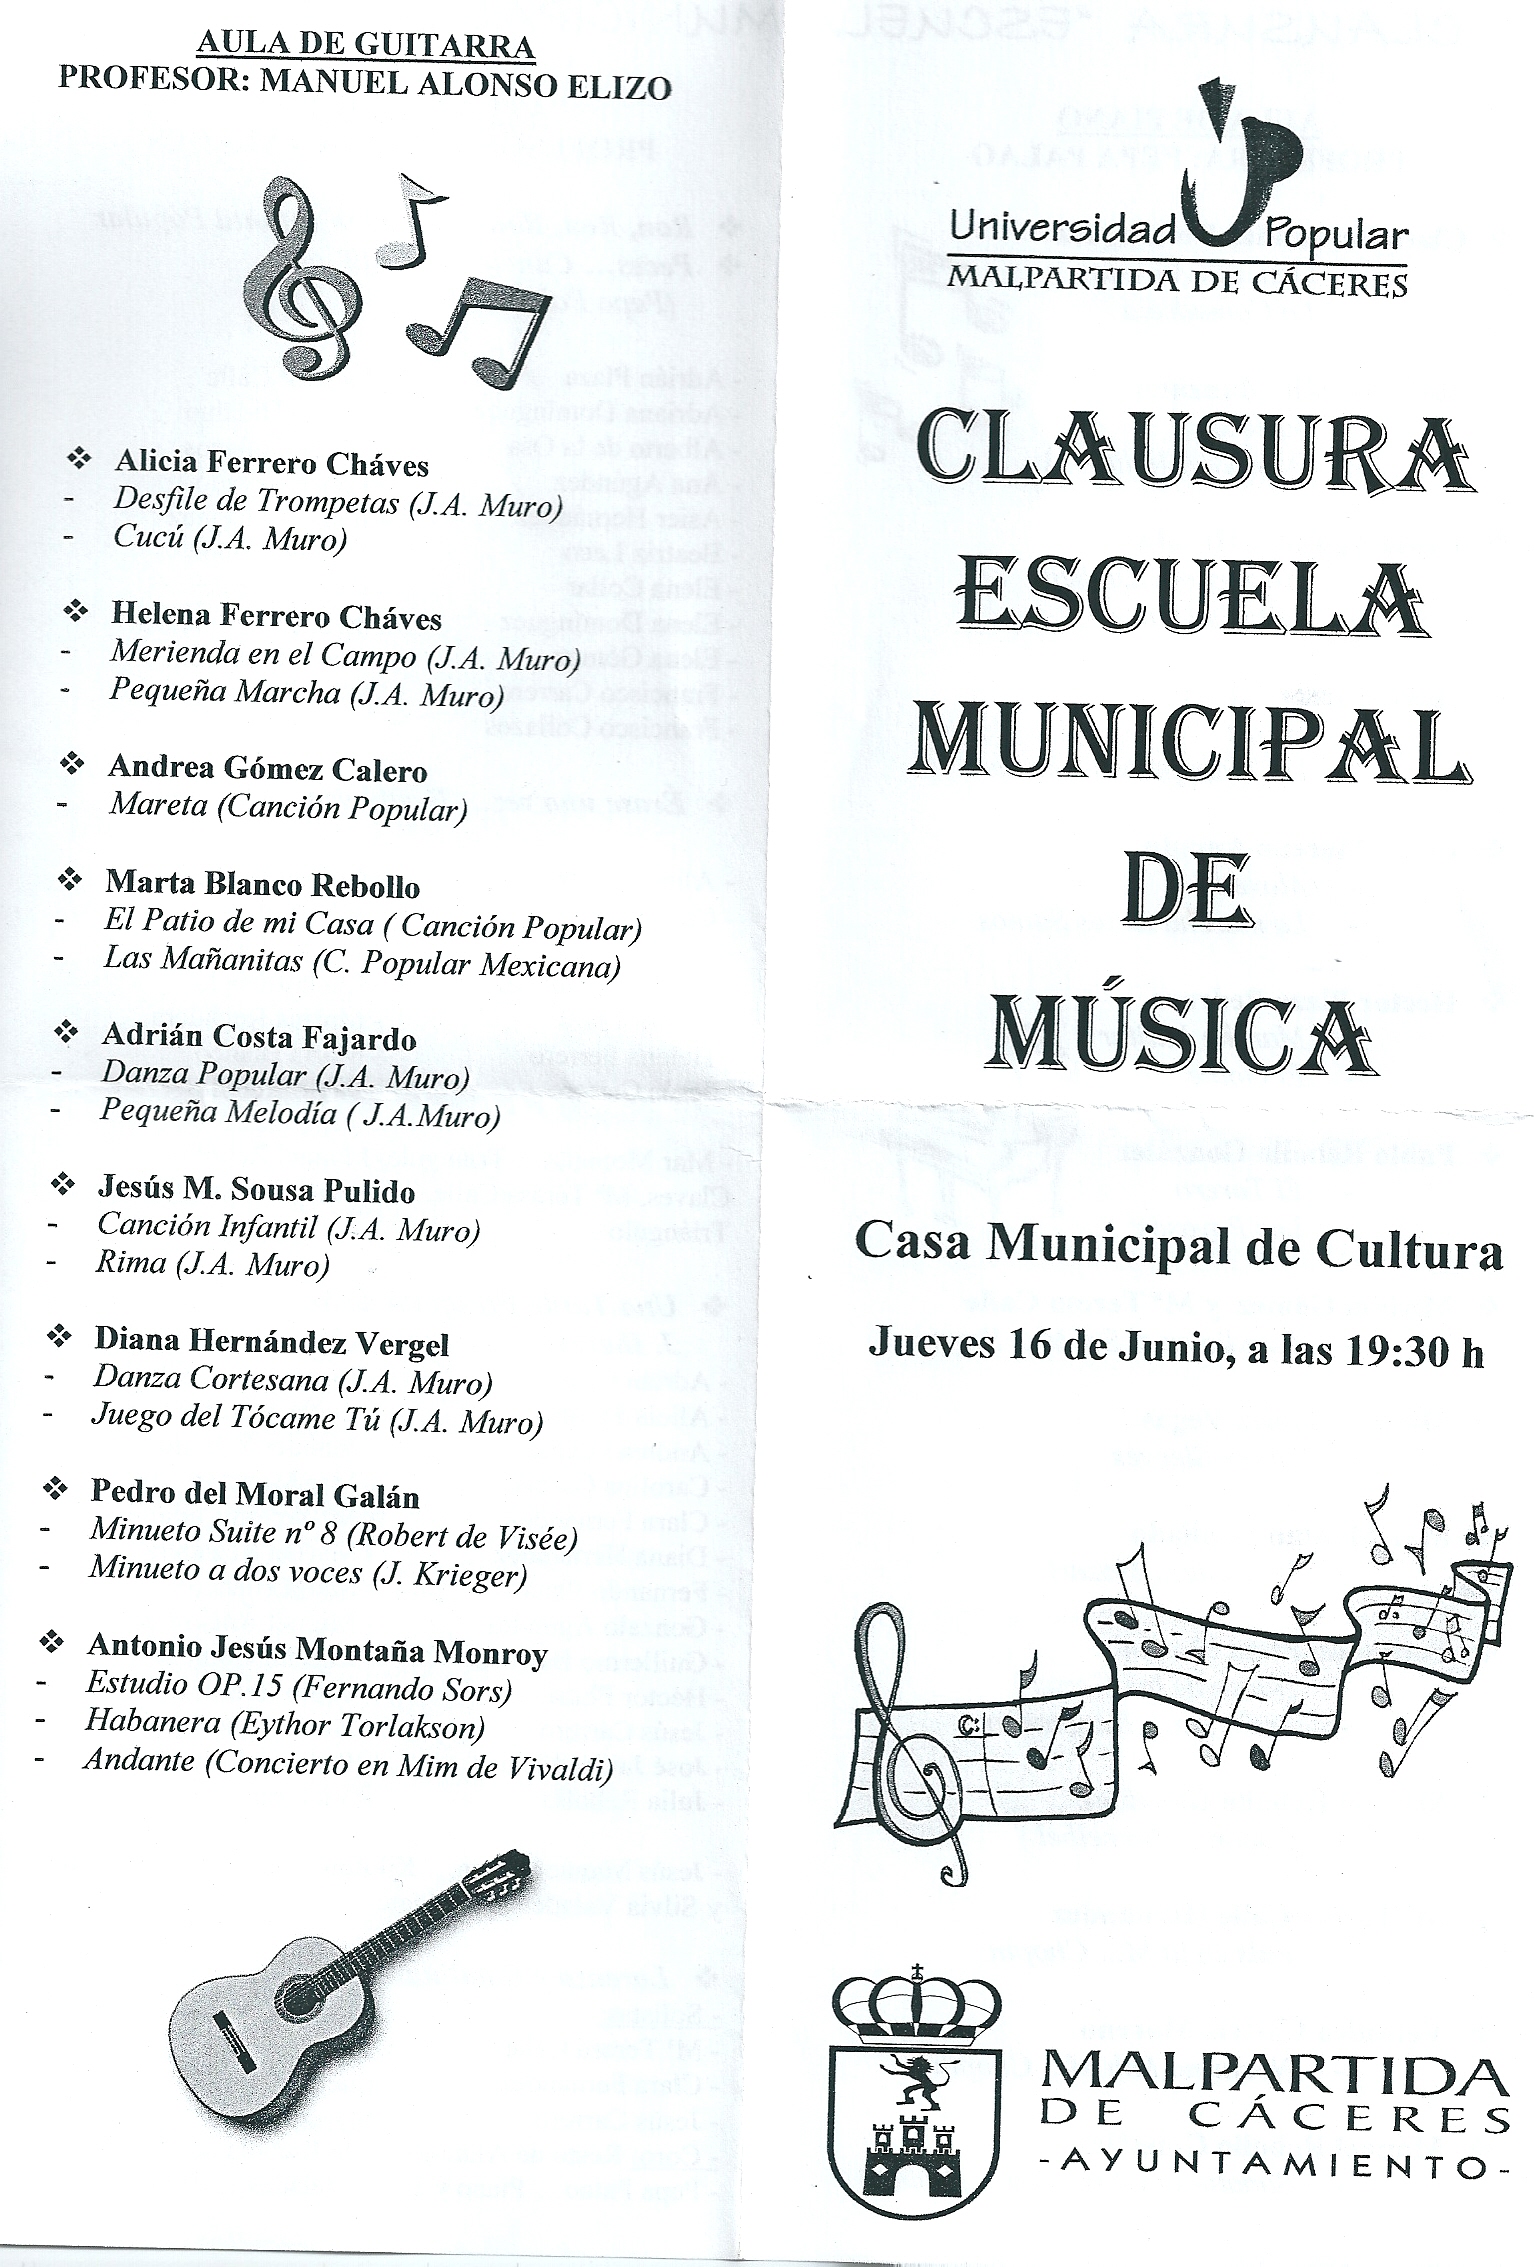 Hoy, jueves, Clausura de la Escuela Municipal de Música